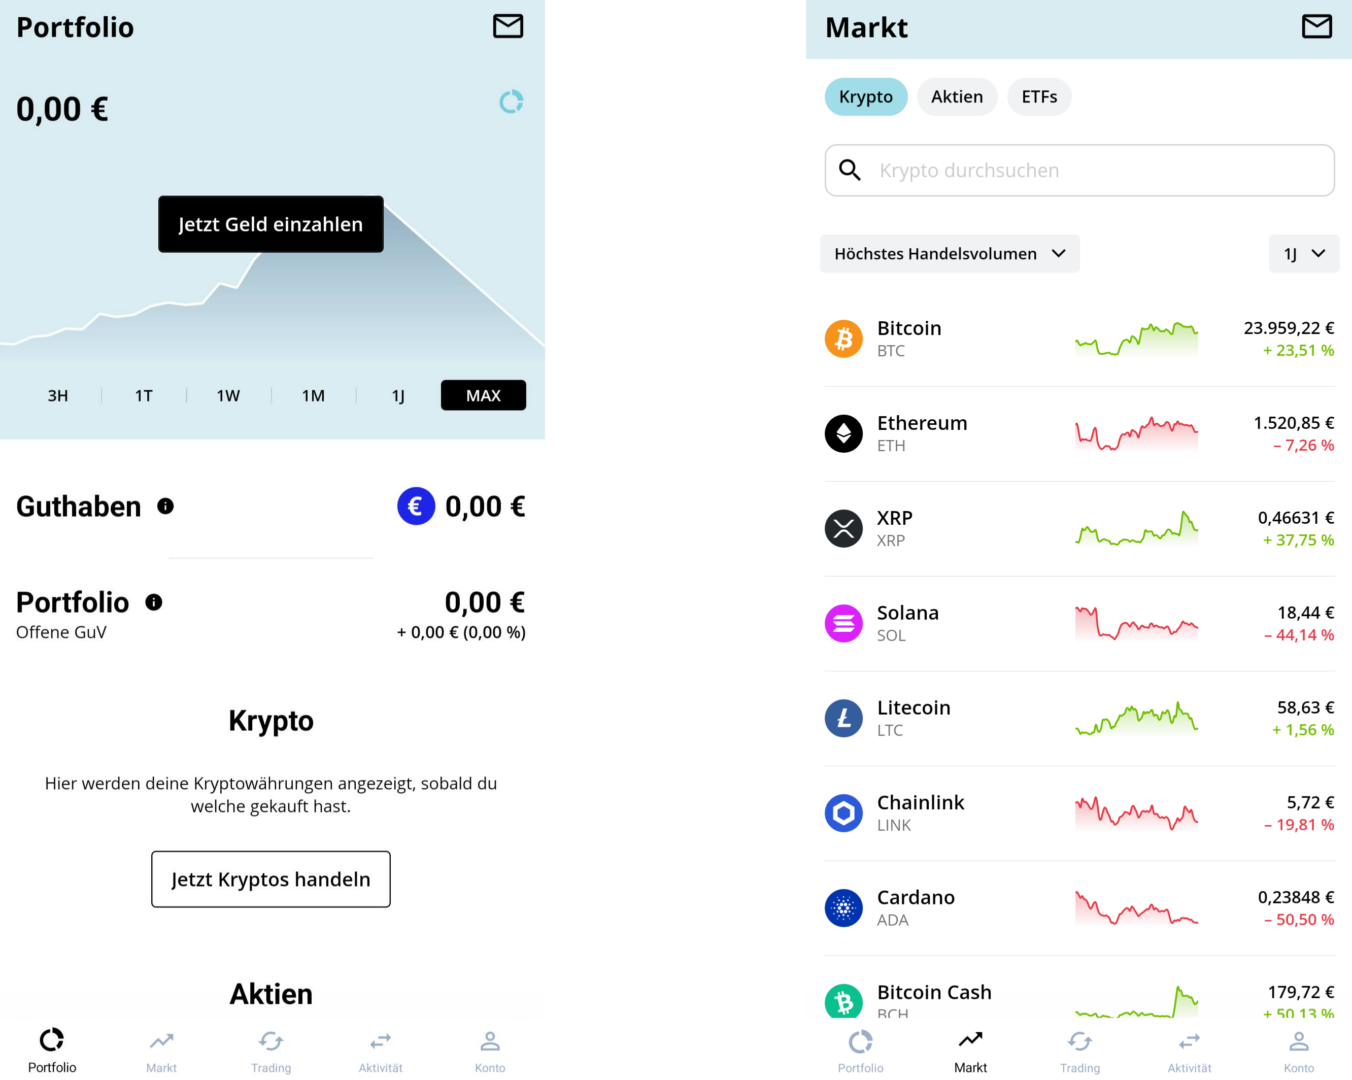 Bison App mit übersichtlicher Darstellung des eigenen Portfolios (links) und zum Handel verfügbare Kryptowährungen (rechts).